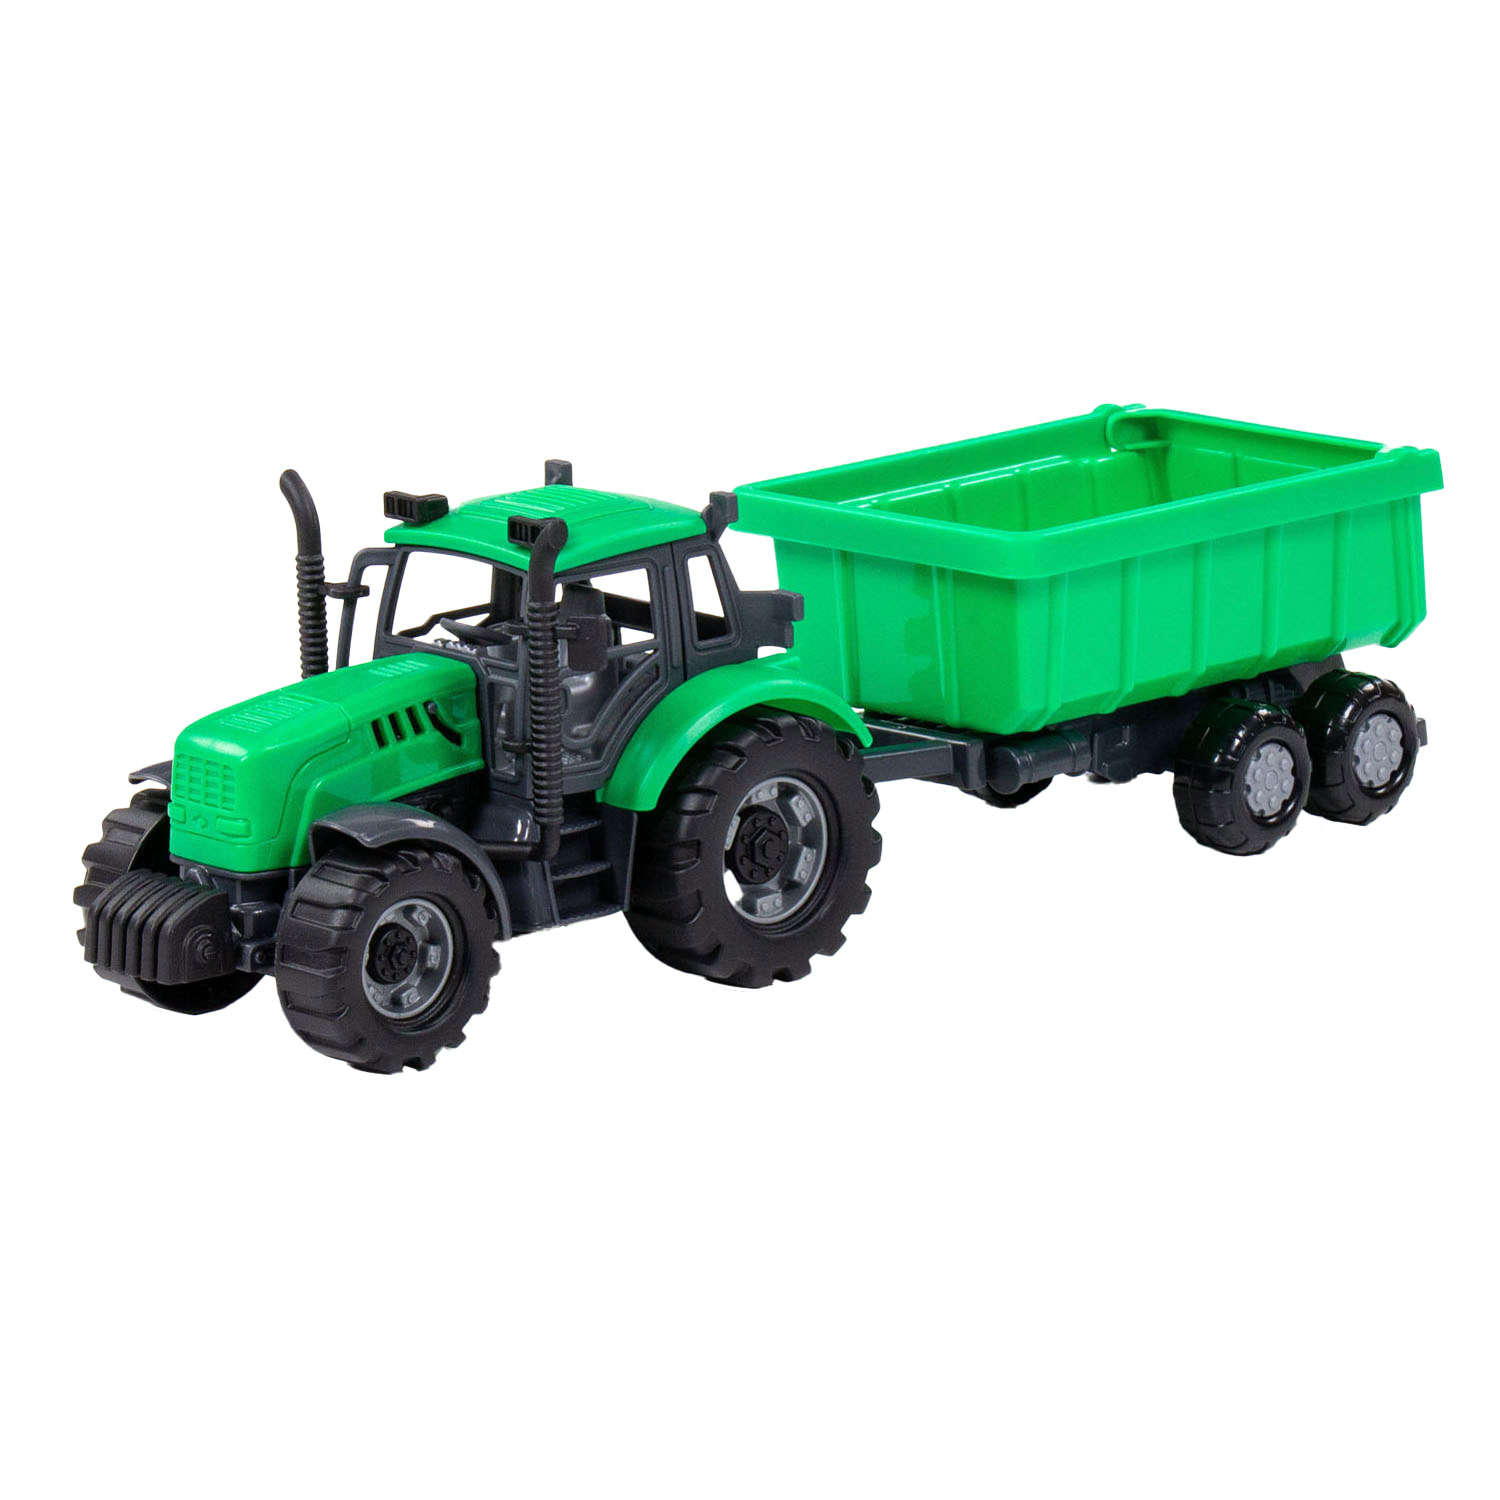 Cavallino Toys Cavallino Tractor met Kiepwagen Aanhangwagen Groen, Schaal 1:32